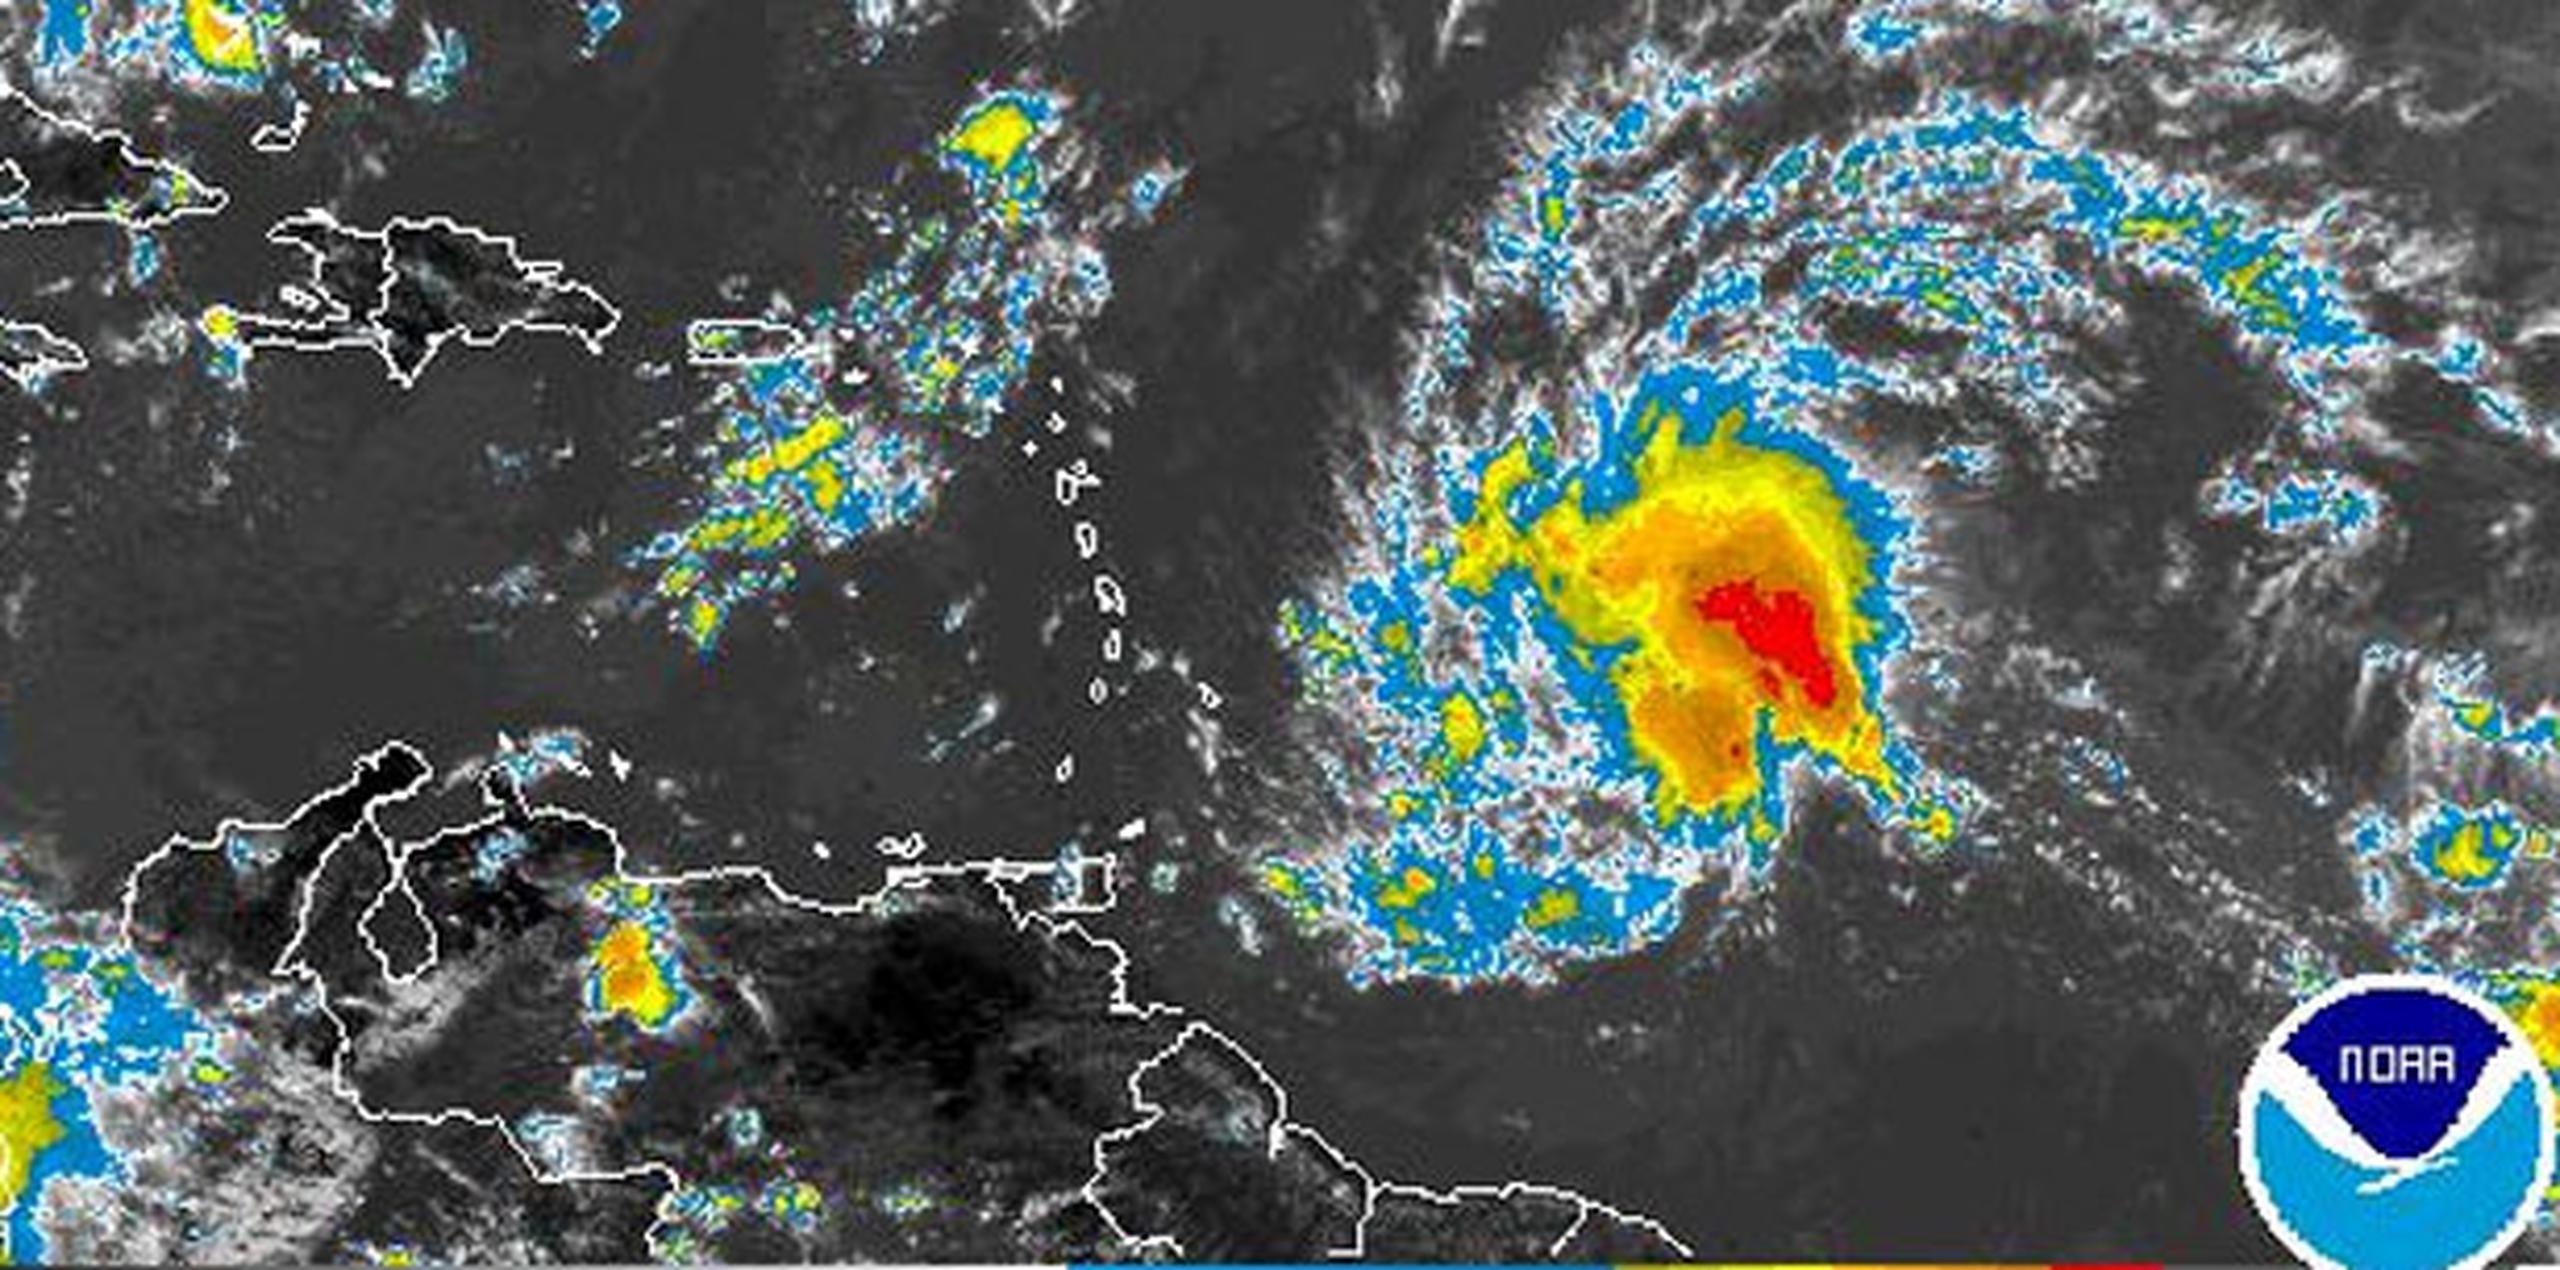 Se espera que las lluvias y vientos asociados a este sistema comiencen a afectar la porción sur de las Antillas Menores durane hoy y mañana. (NOAA)